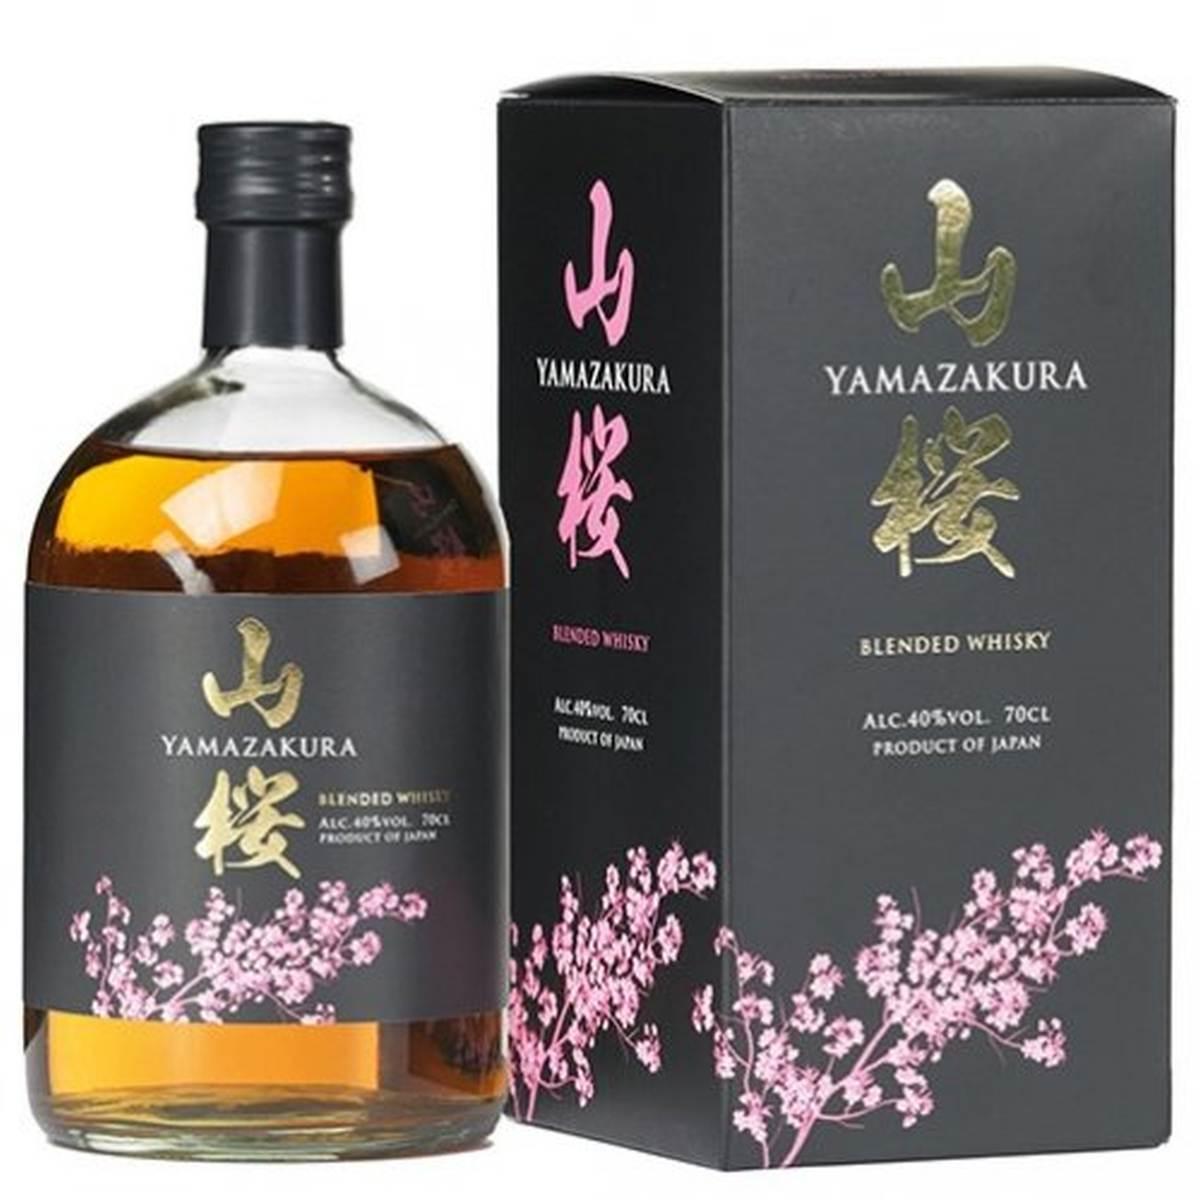 Yamazakura Blended Whisky 70cl.